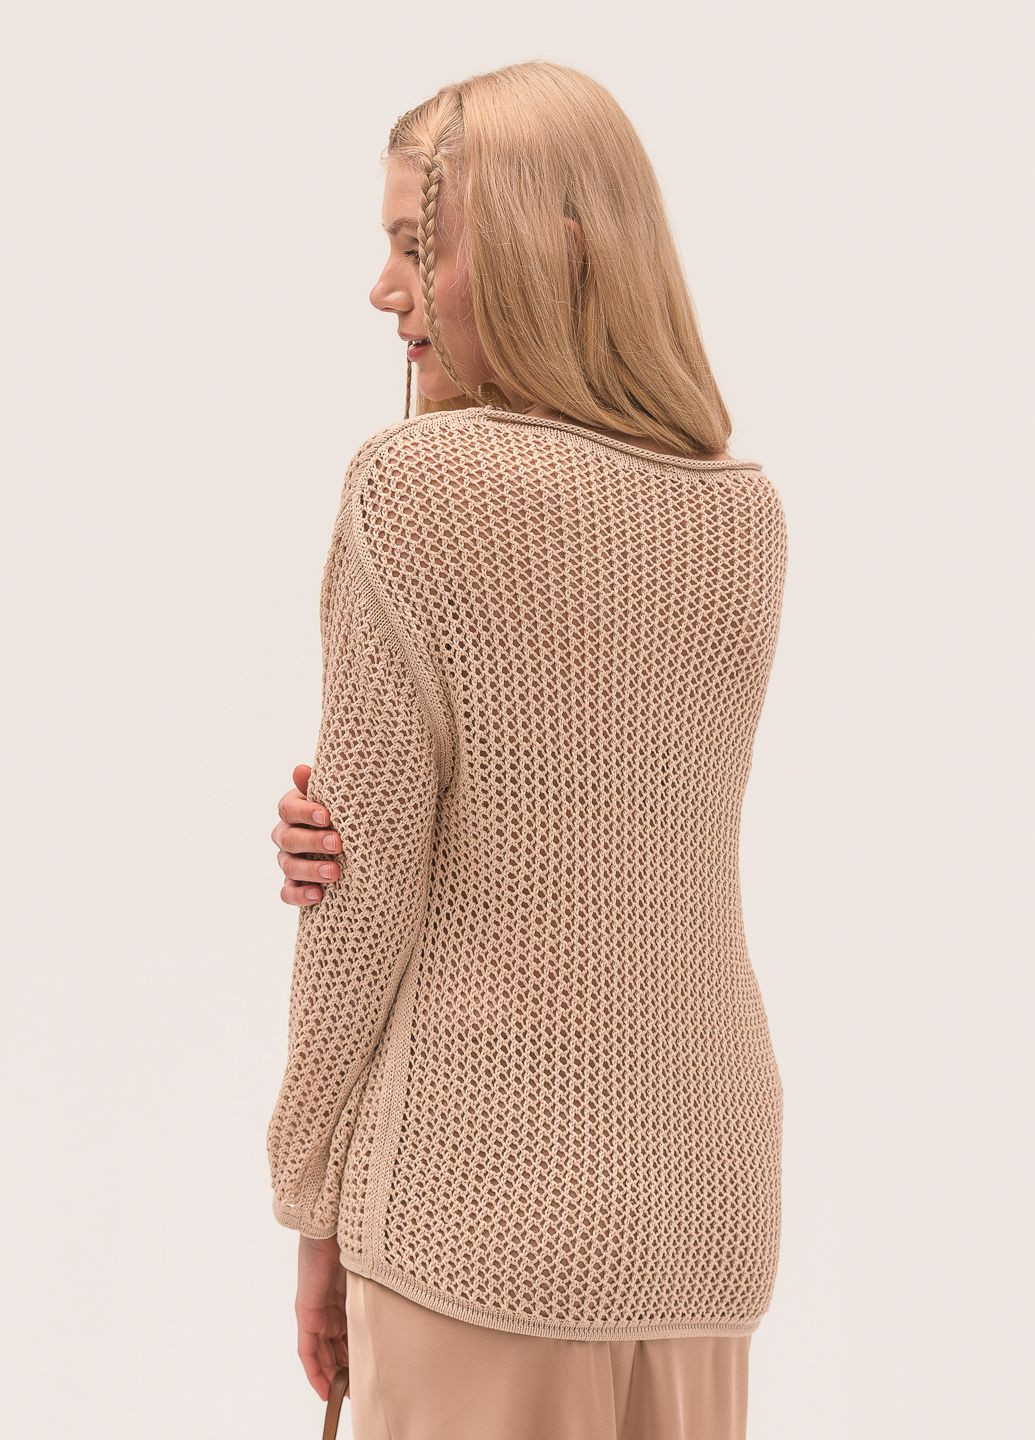 Бежевый женский есо-свитер с дырками SVTR